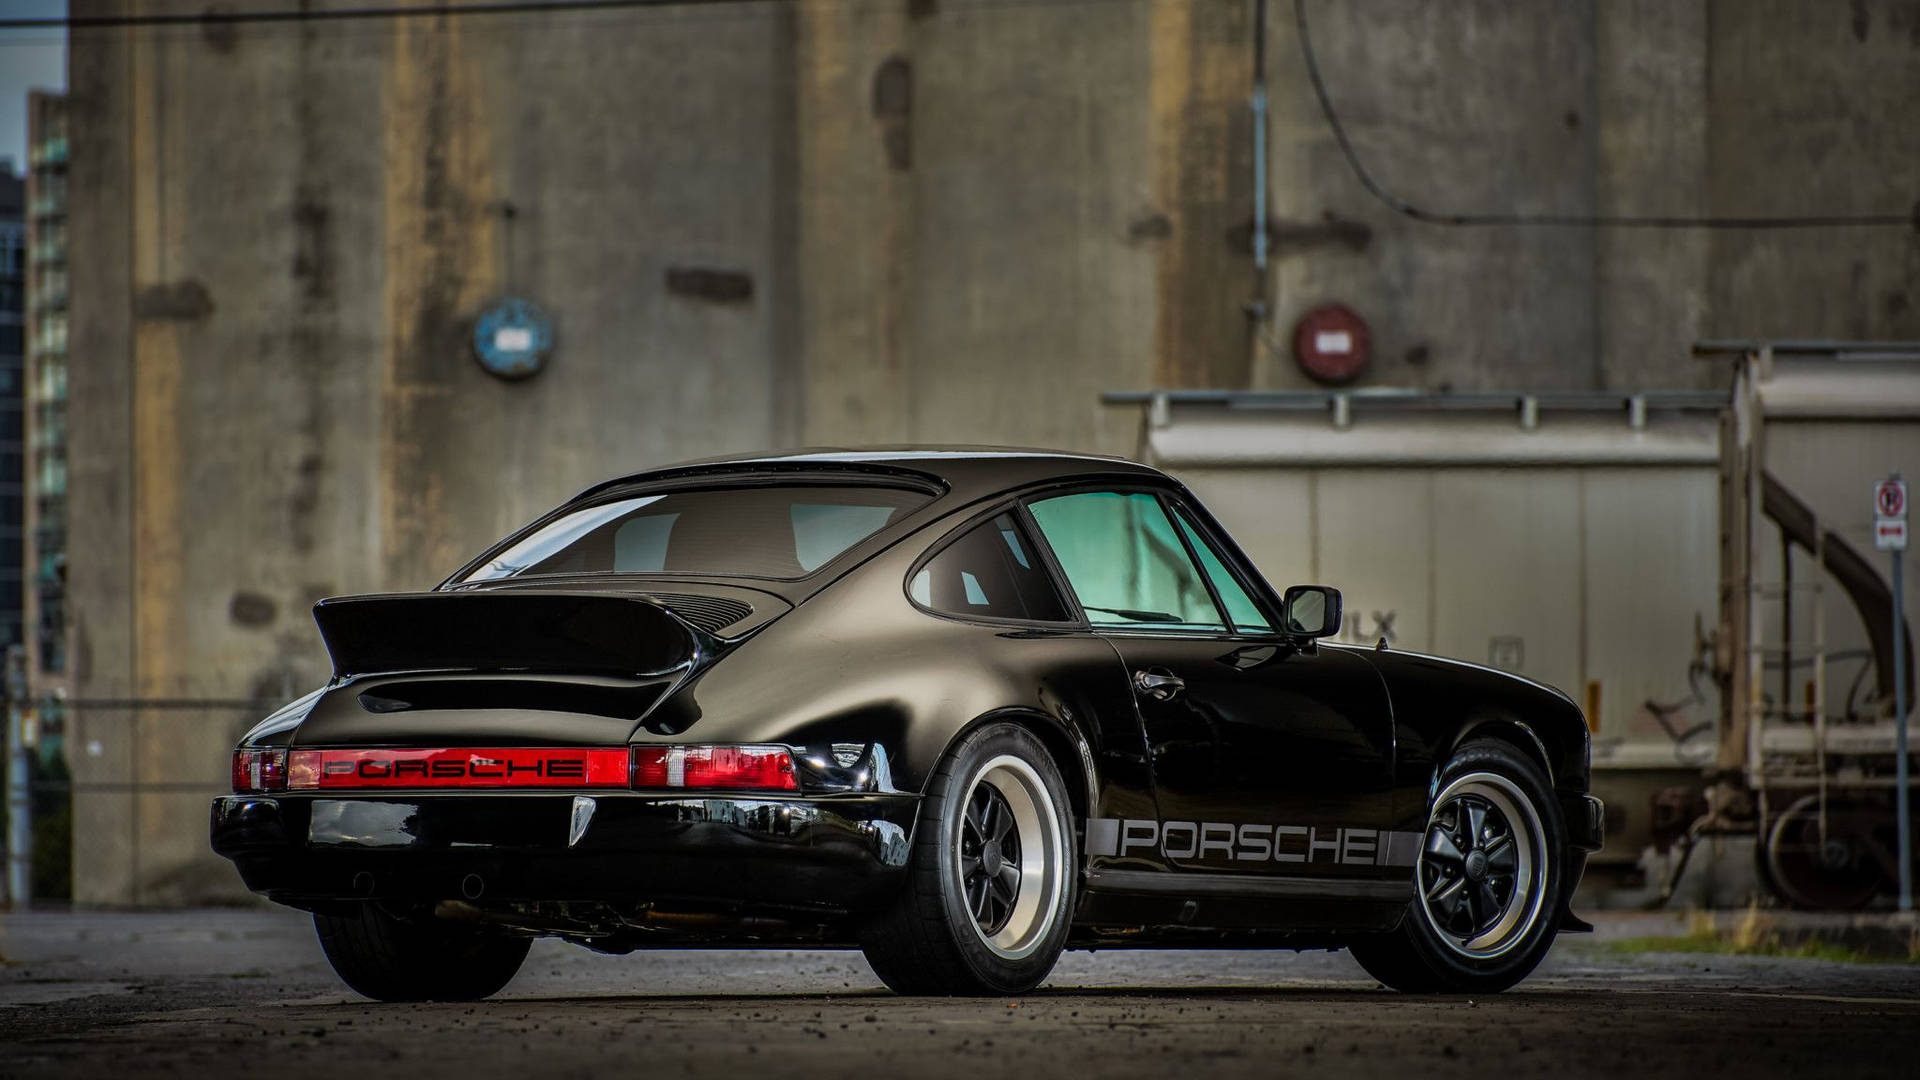 Porsche 911 In Jet Black Paint Background